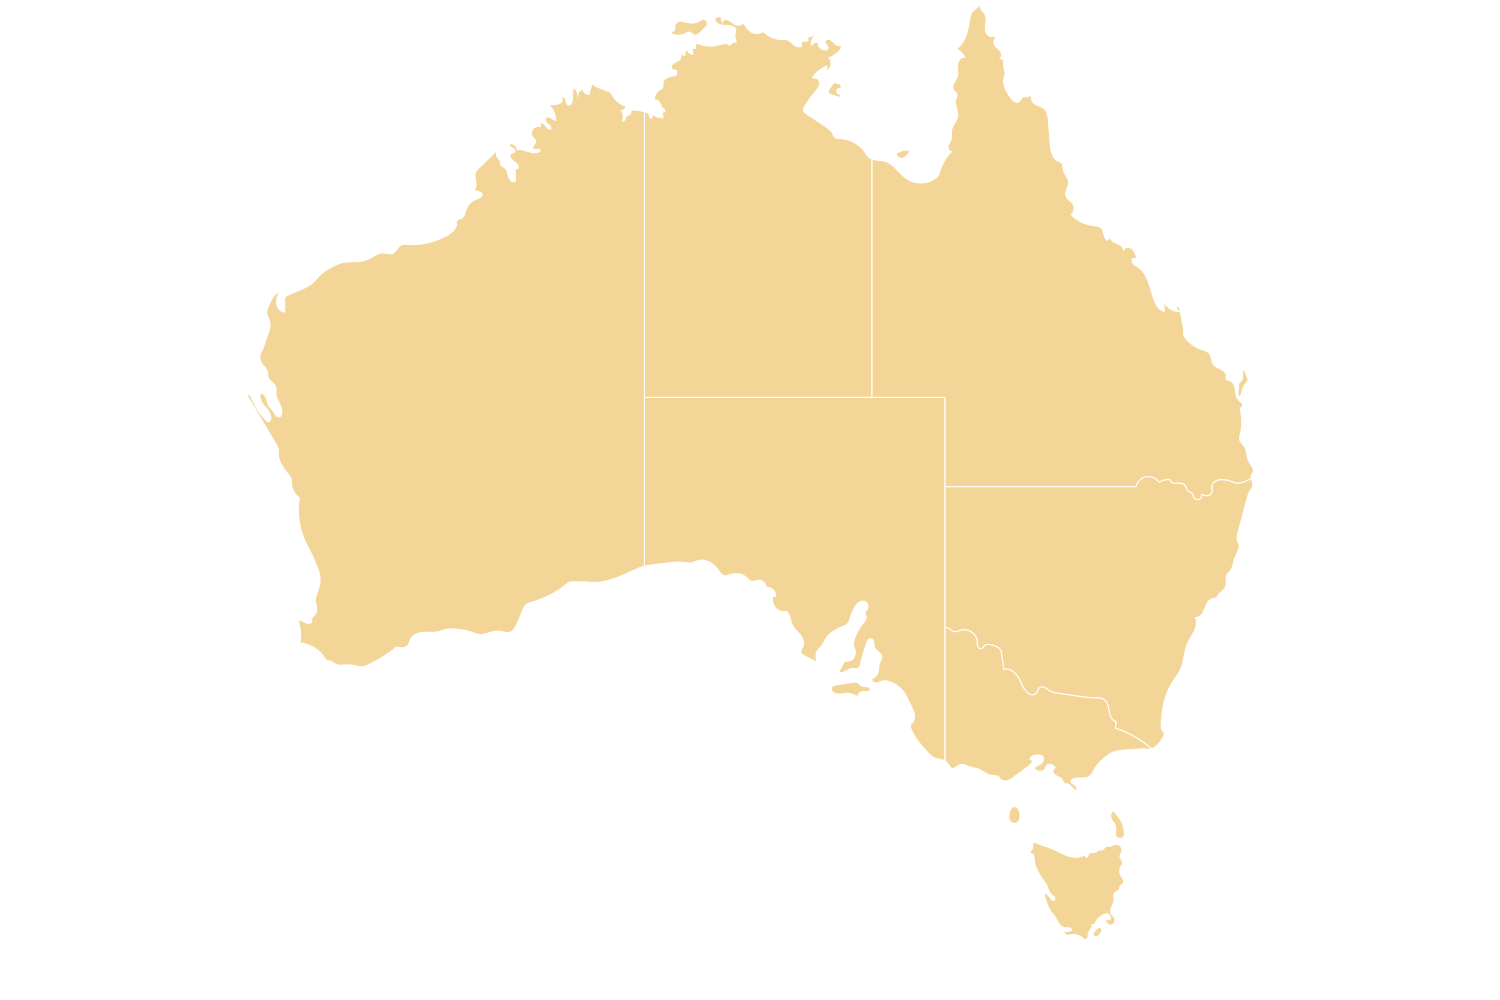 澳洲地圖